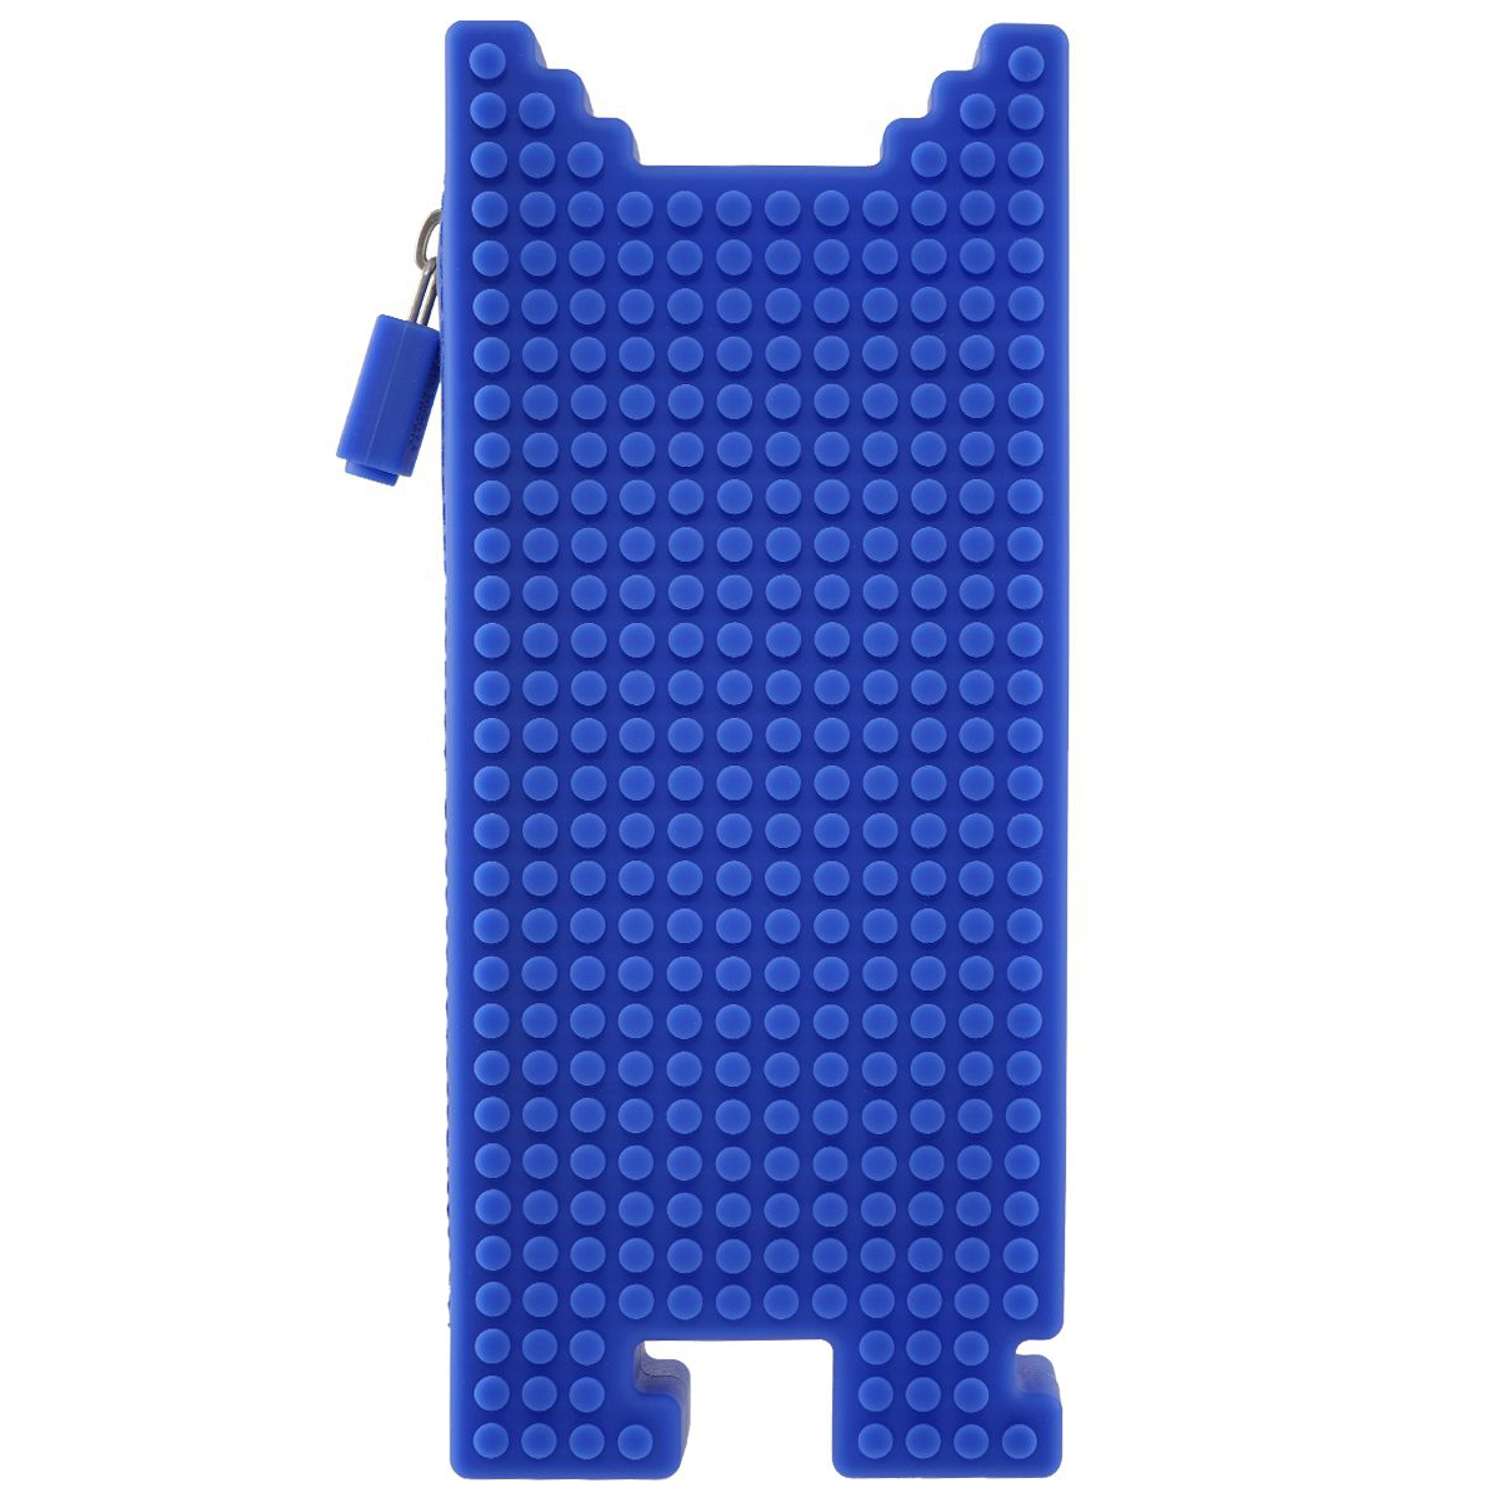 Пенал Upixel пиксельный Futuristic Kids Pencil Case синий U19-005 - фото 1